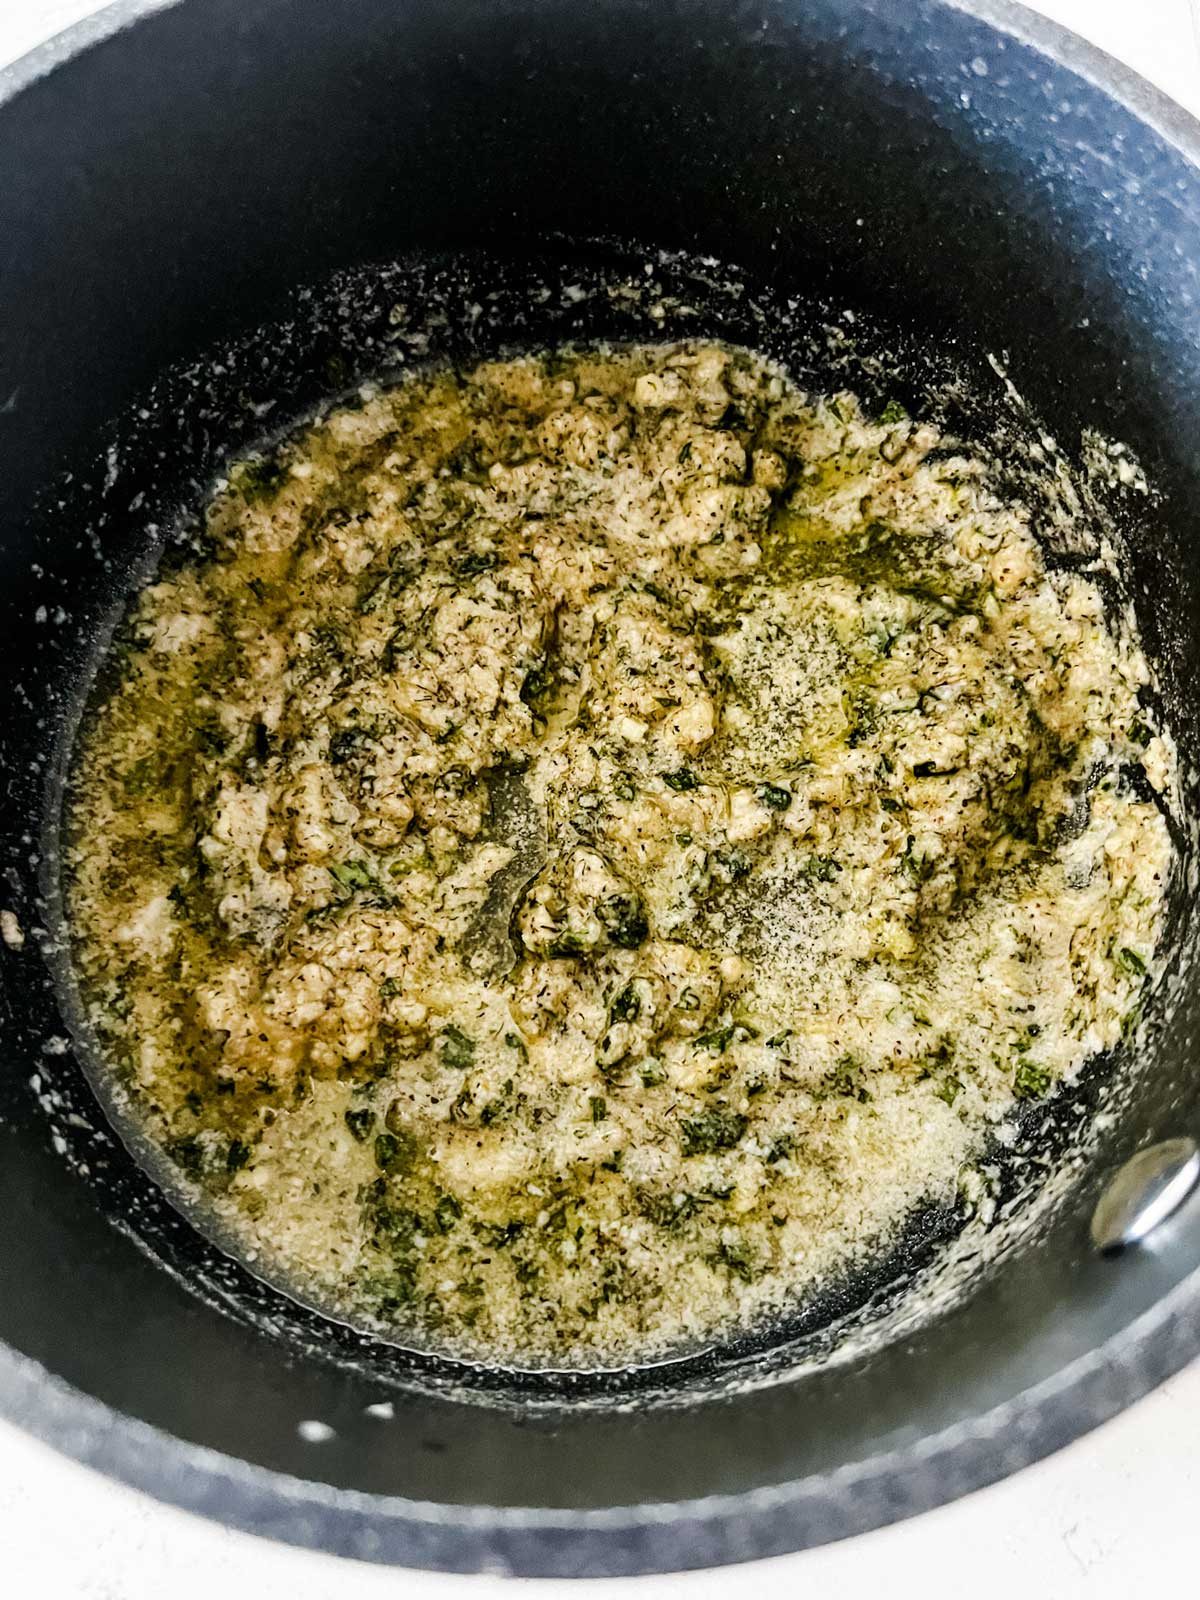 Ranch garlic butter in a saucepan.